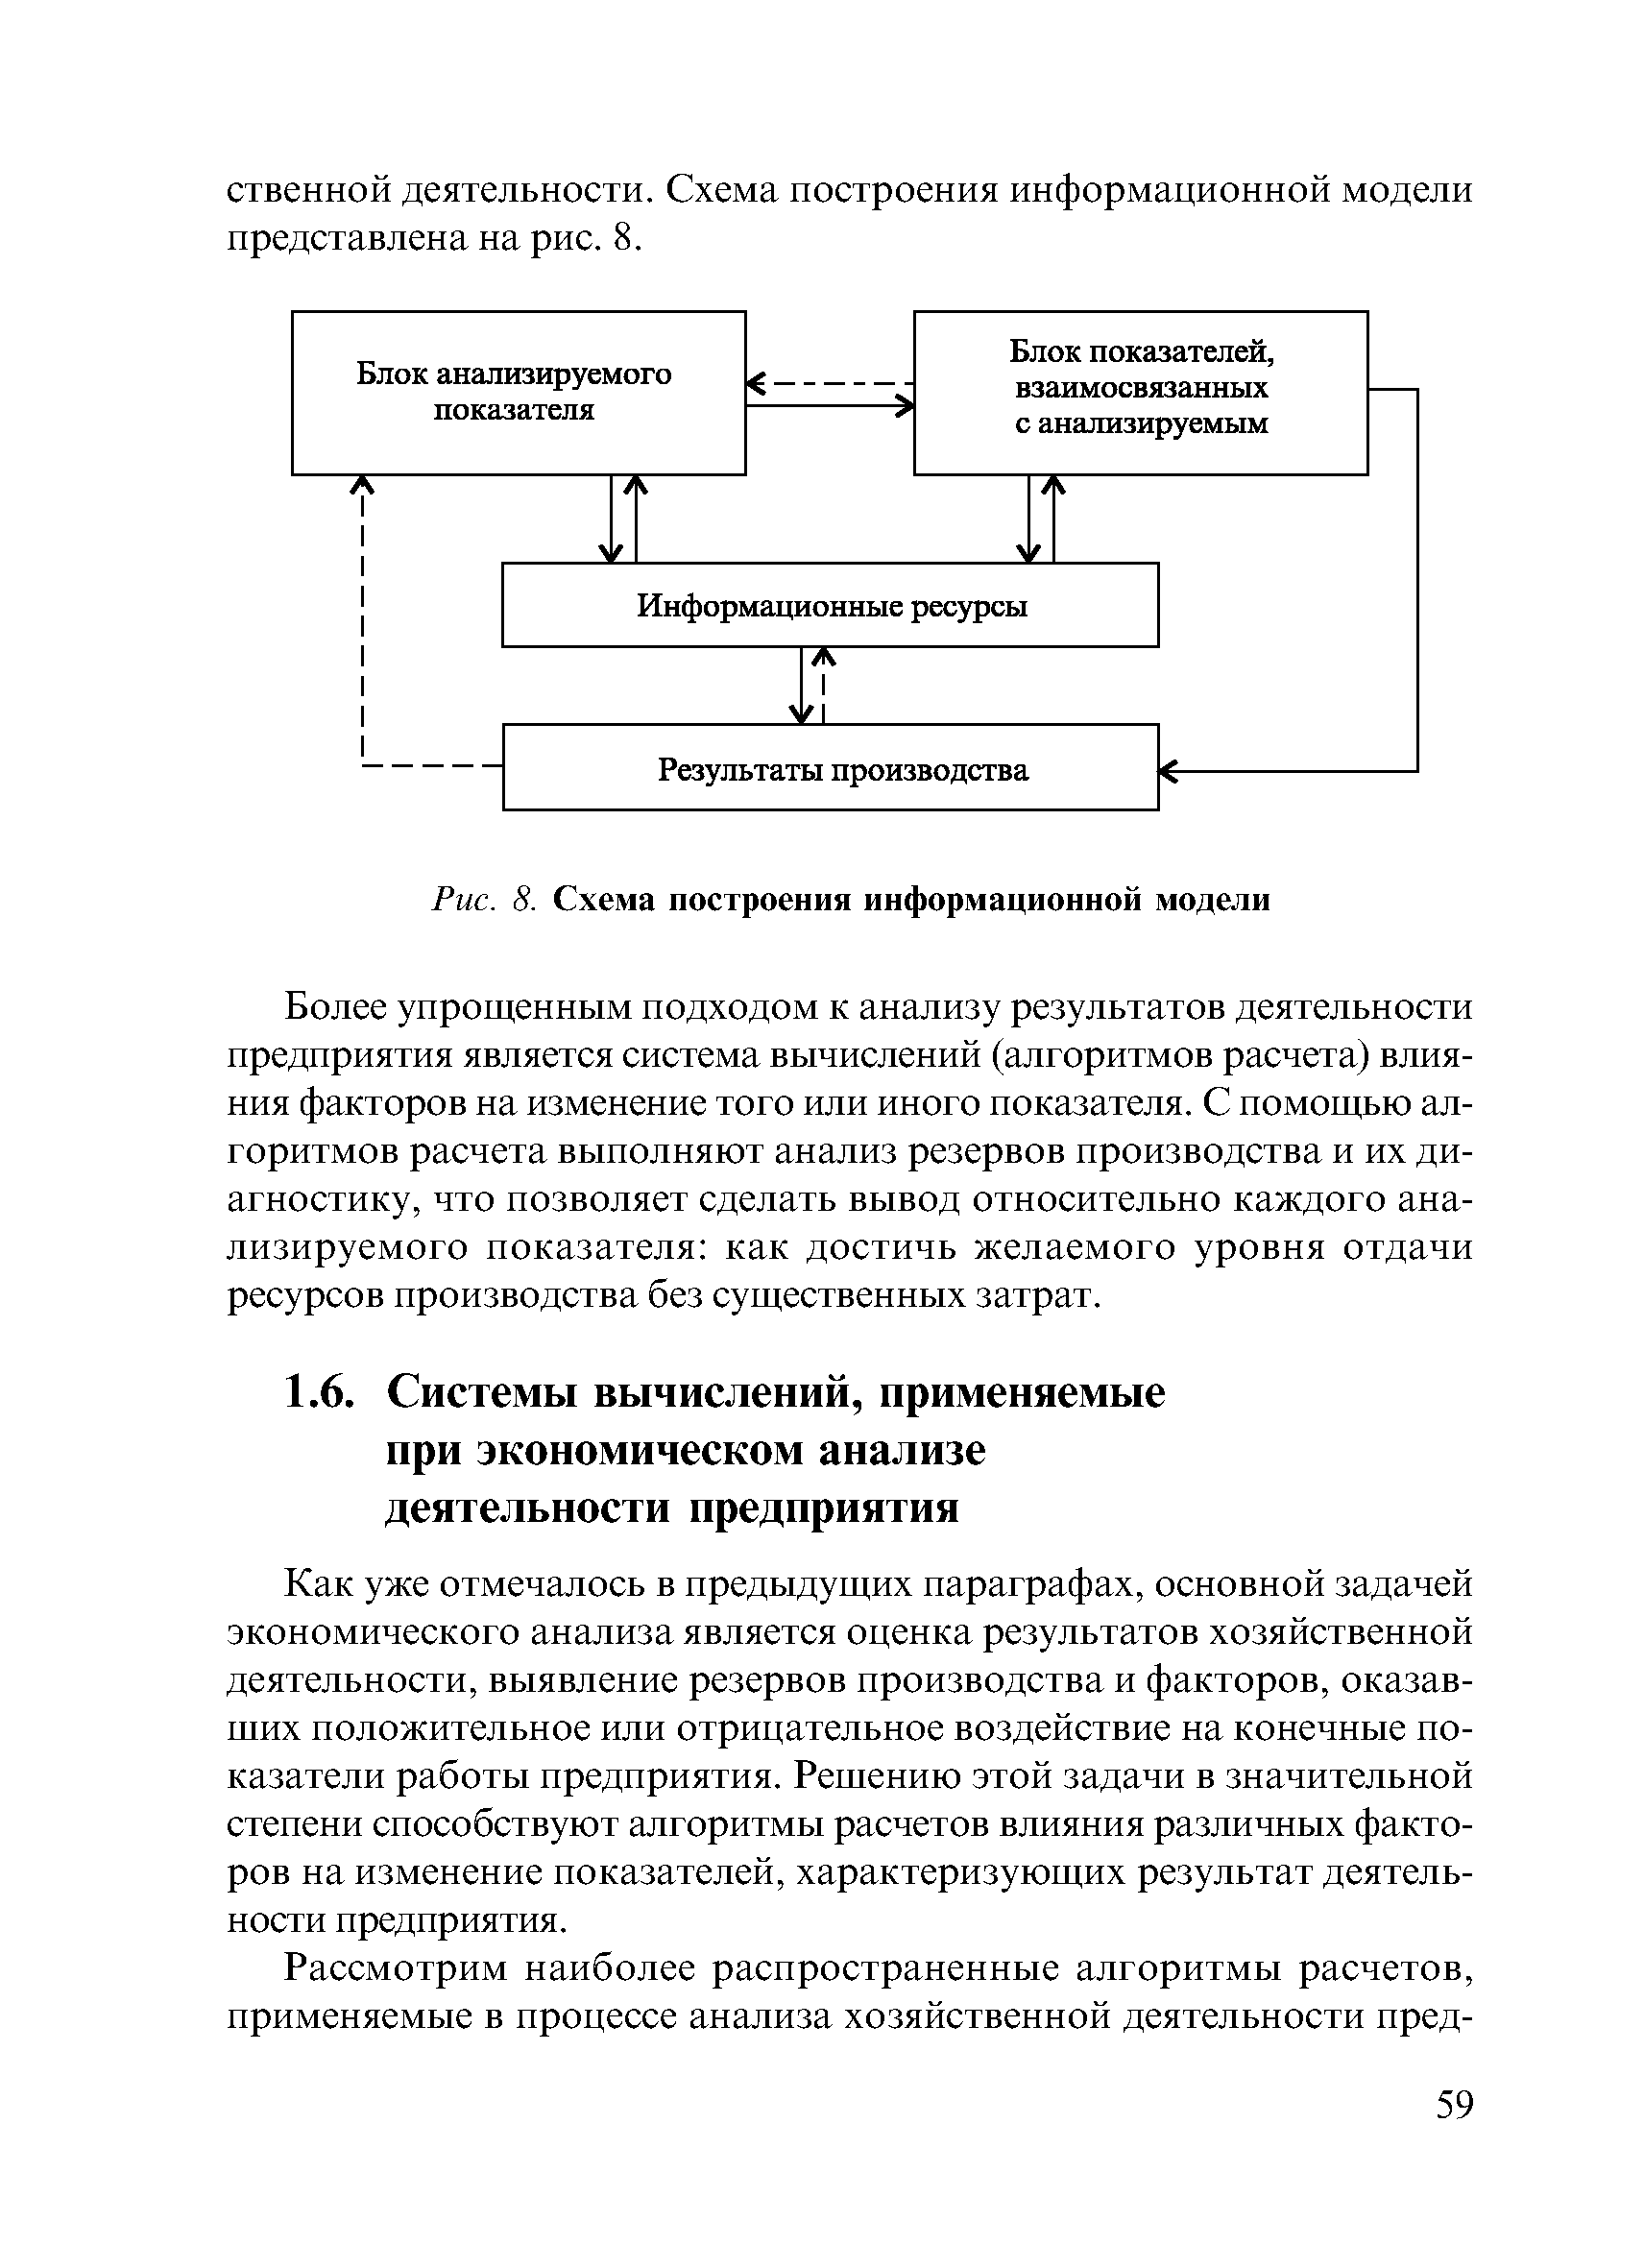 Рис. 8. Схема построения информационной модели
